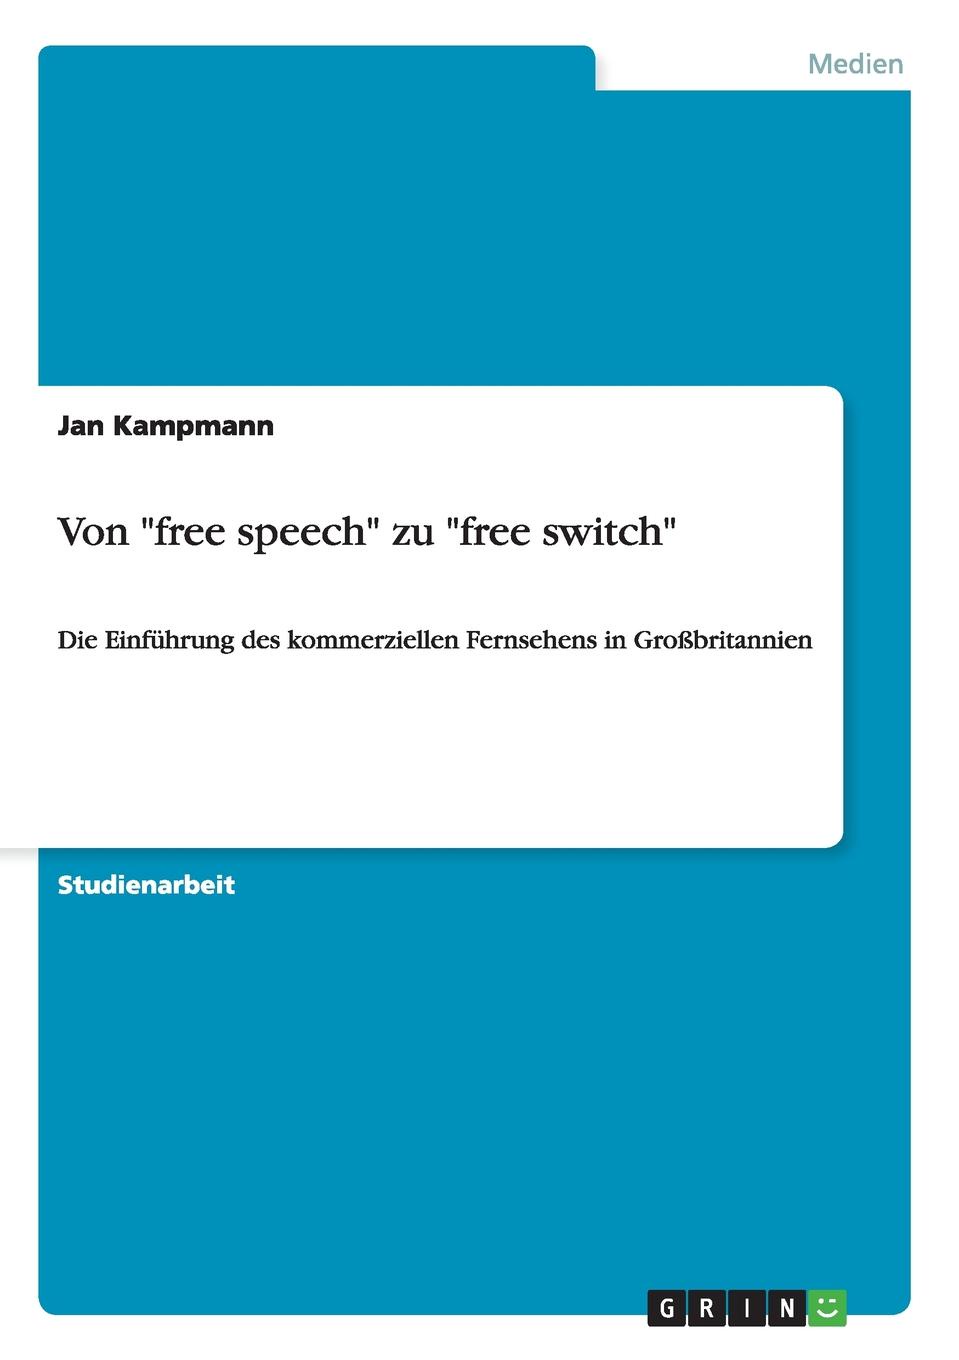 фото Von "free speech" zu "free switch"